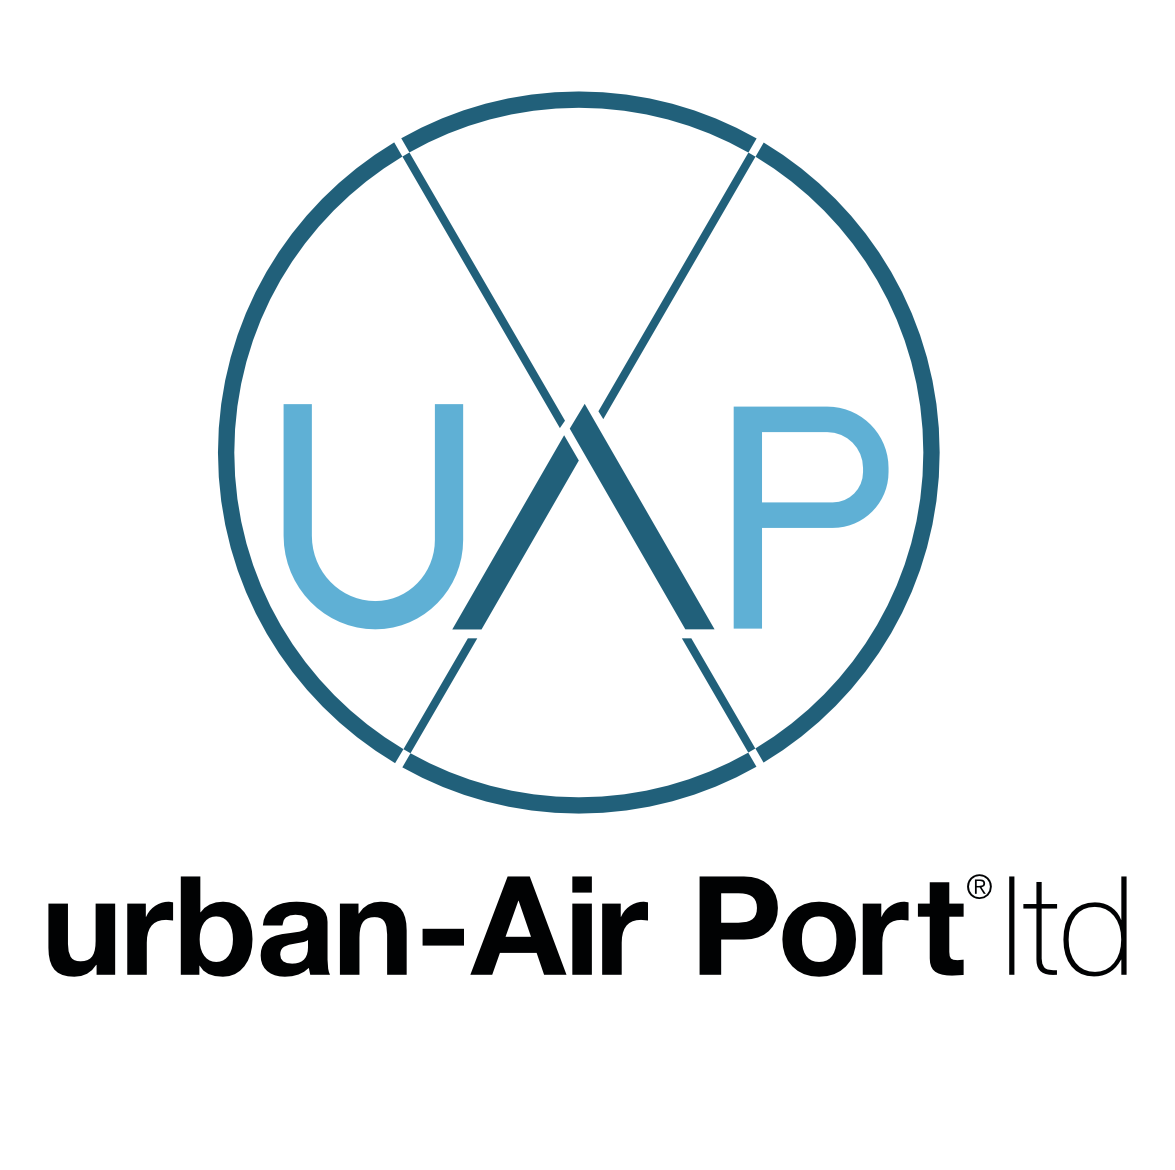 Urban-air Port